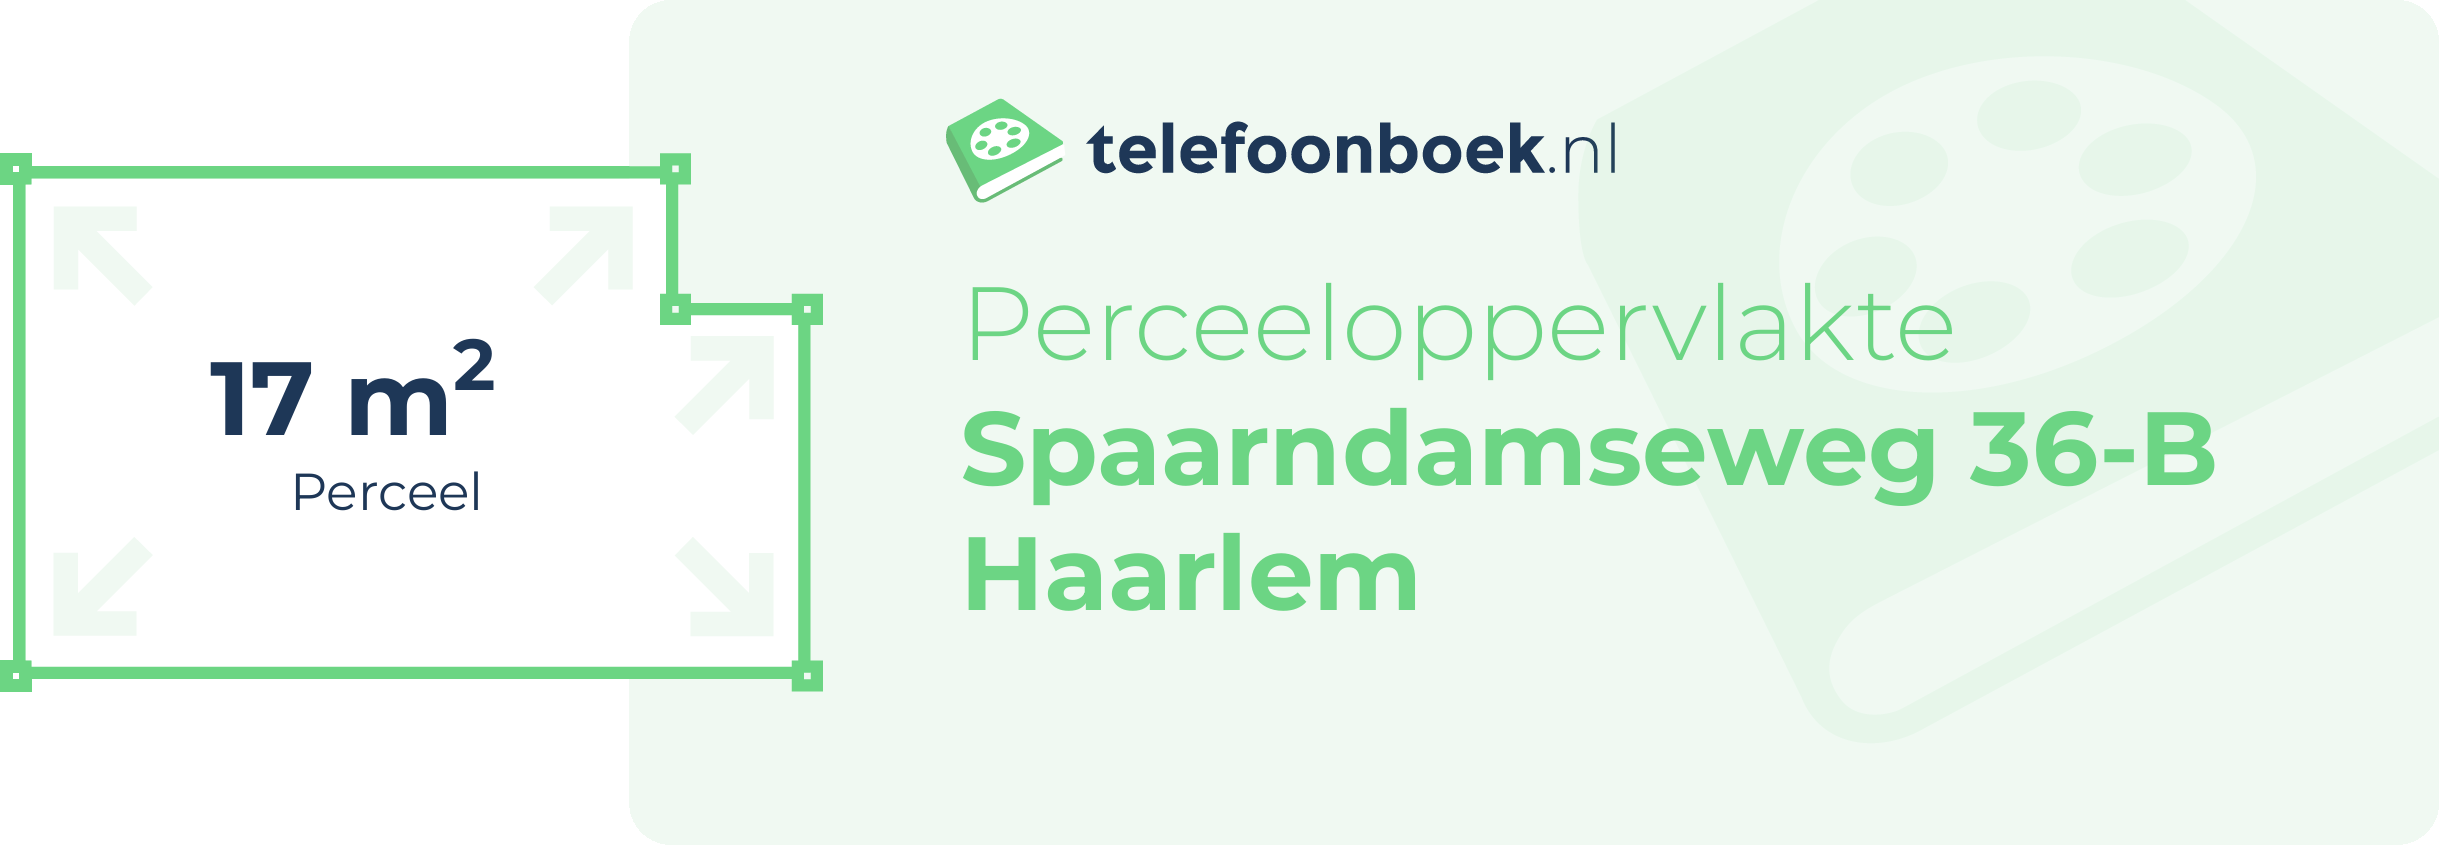 Perceeloppervlakte Spaarndamseweg 36-B Haarlem